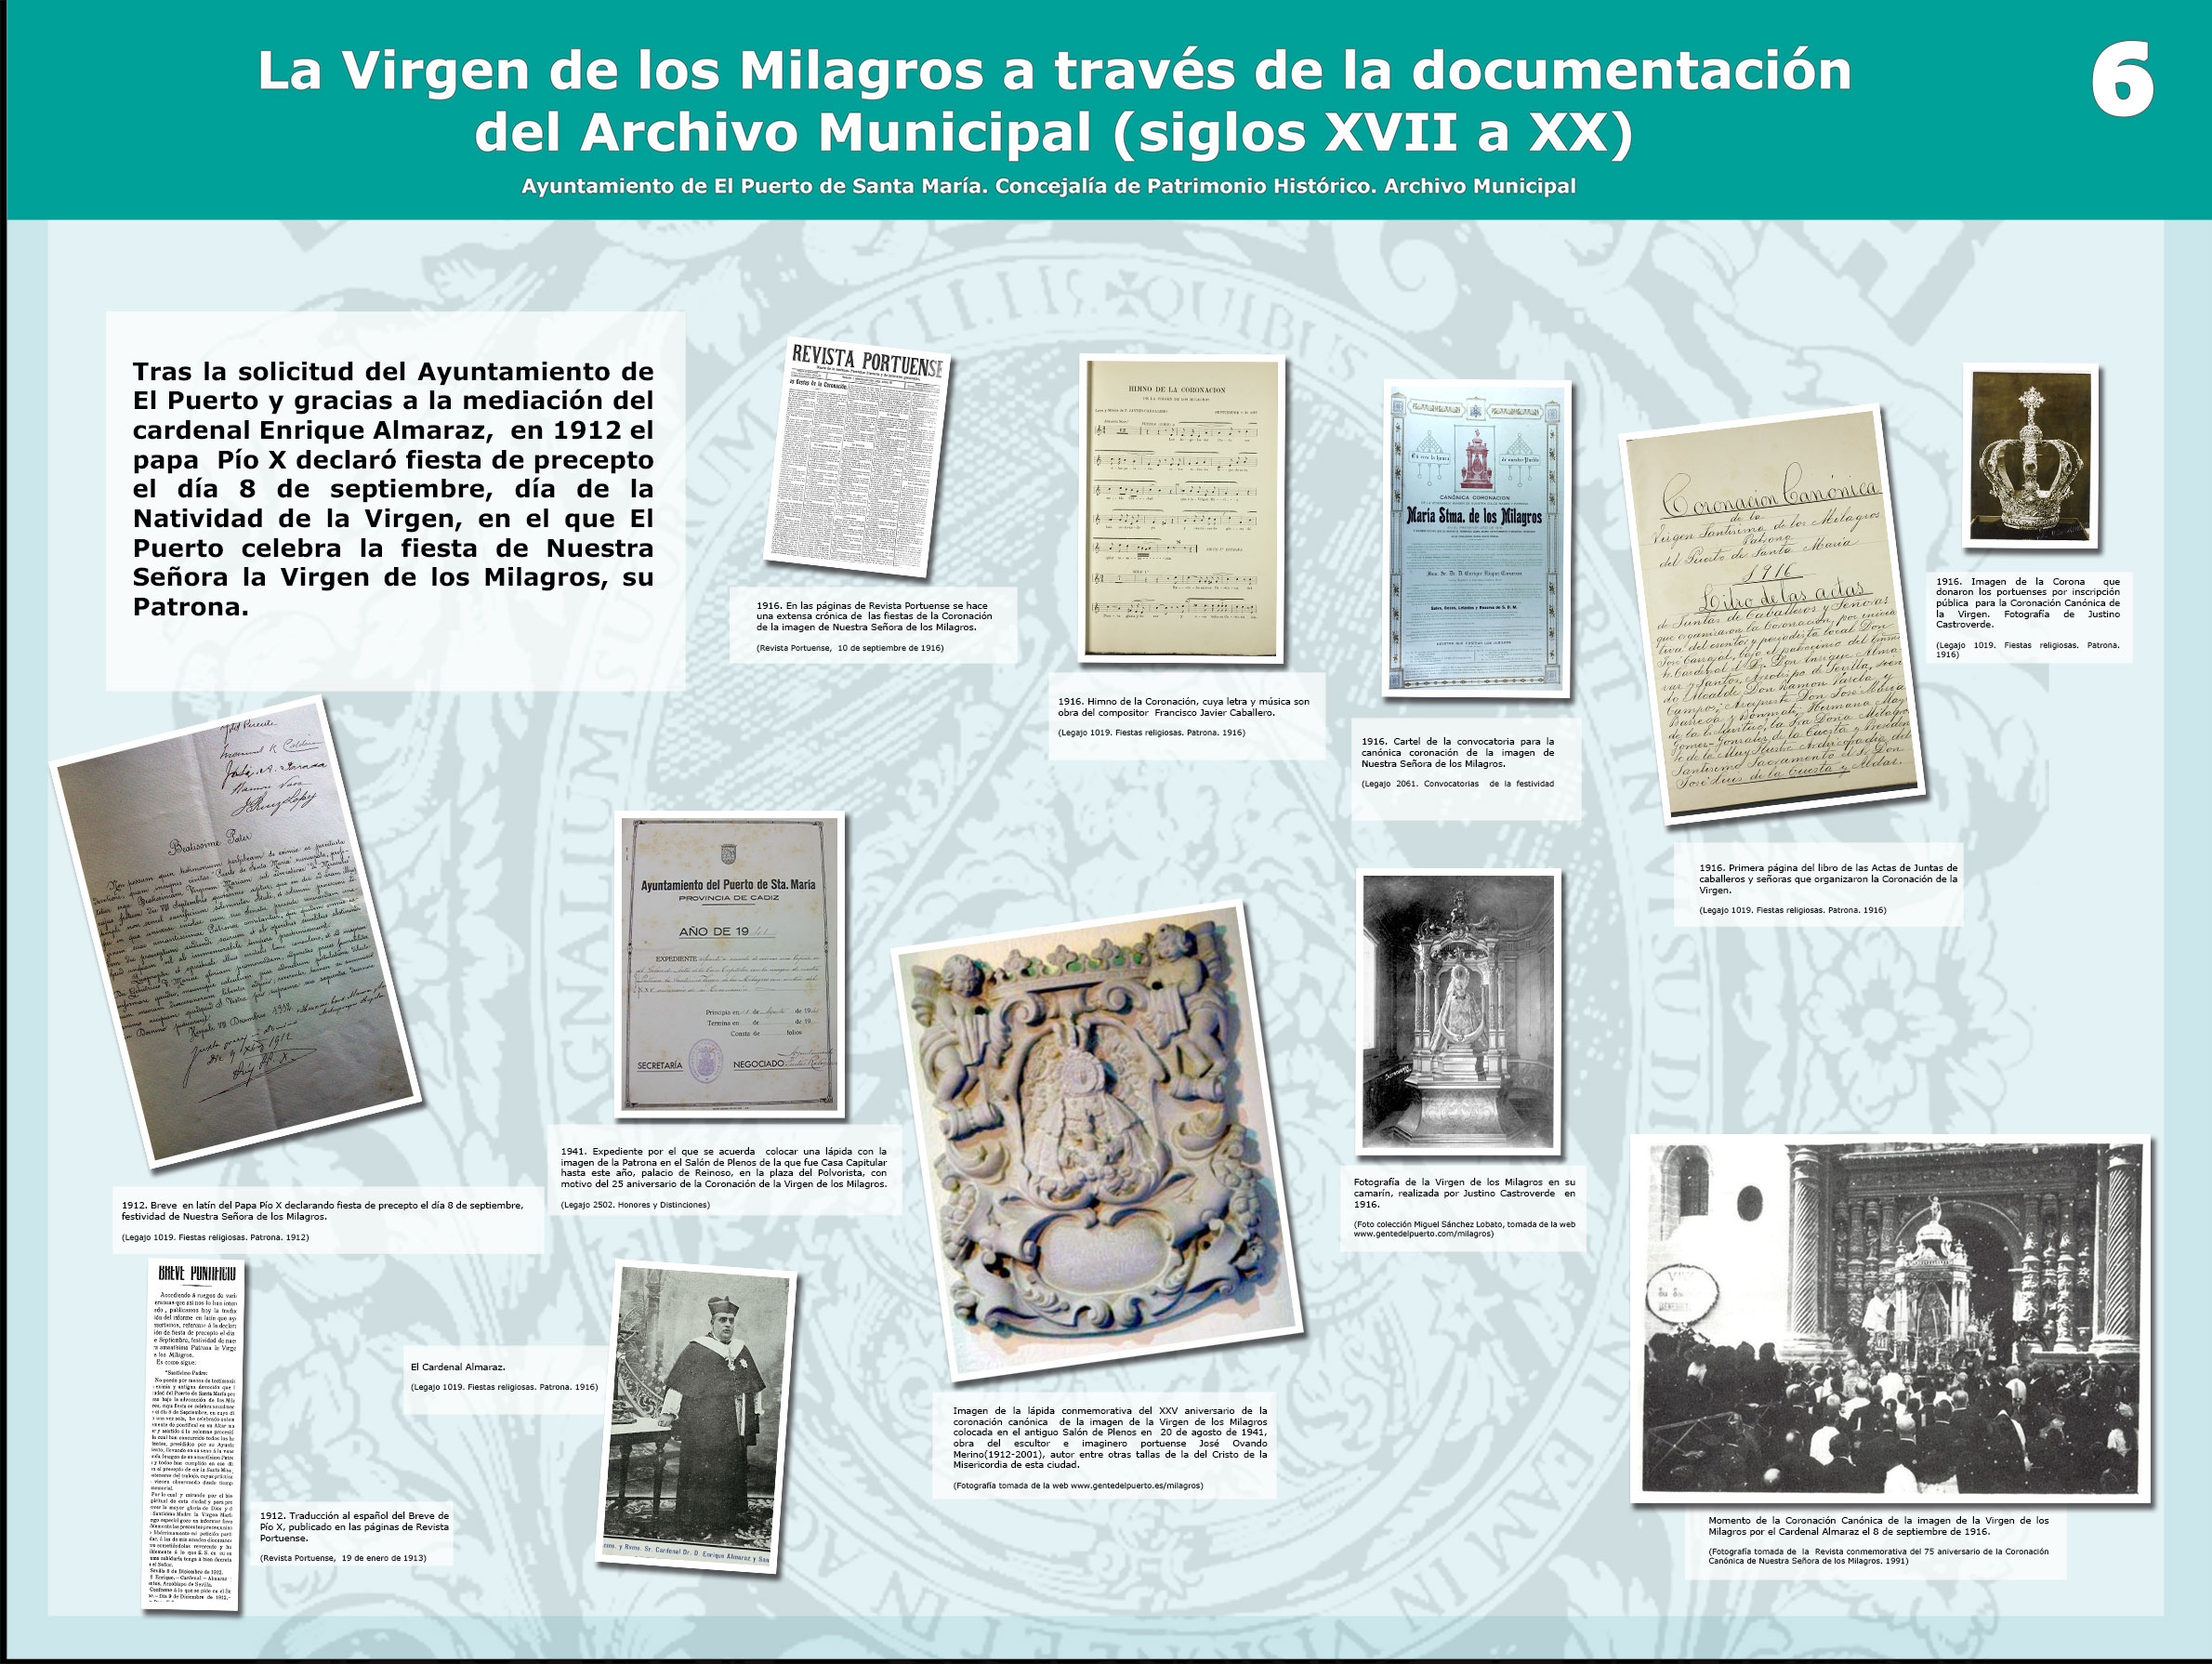 La Virgen de los Milagros a través de la documentación del Archivo Municipal (s. XVII a XX)